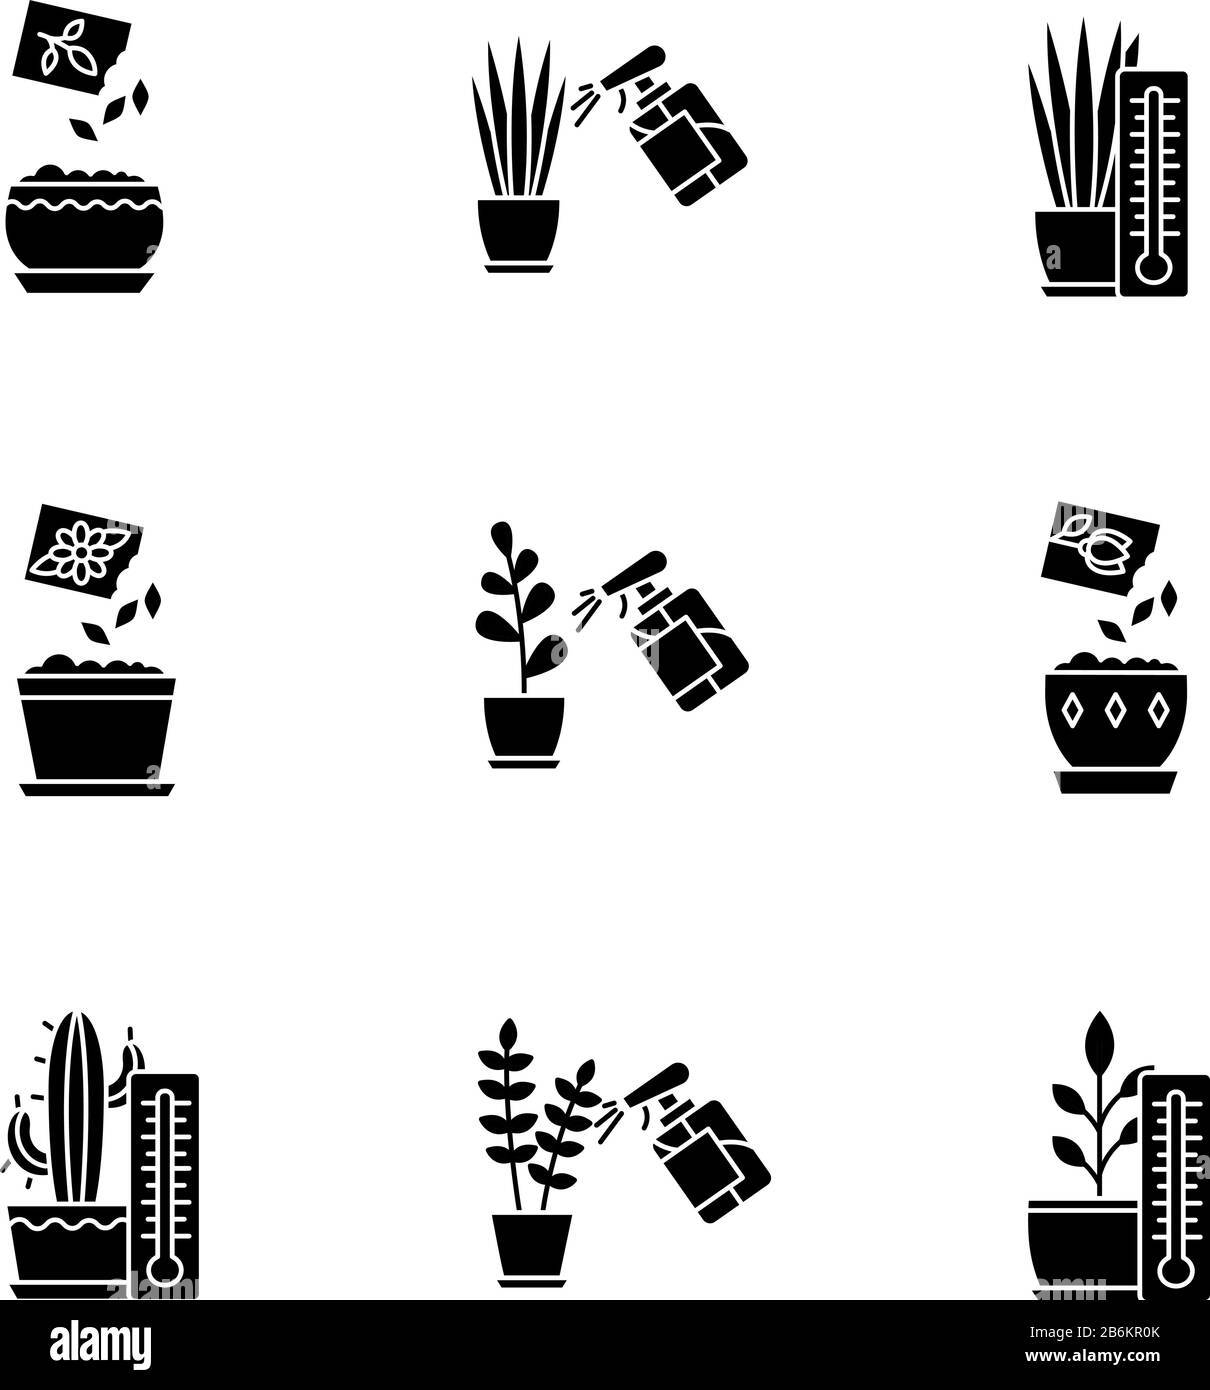 Die schwarzen Glypen-Symbole der Hauspflanzenpflege werden auf den weißen  Raum gesetzt. Pflanzenanbau. Spritzen, Beschlagen. Pflanzen von Samen.  Bereitstellung von Lufttemperaturbedingungen Stock-Vektorgrafik - Alamy